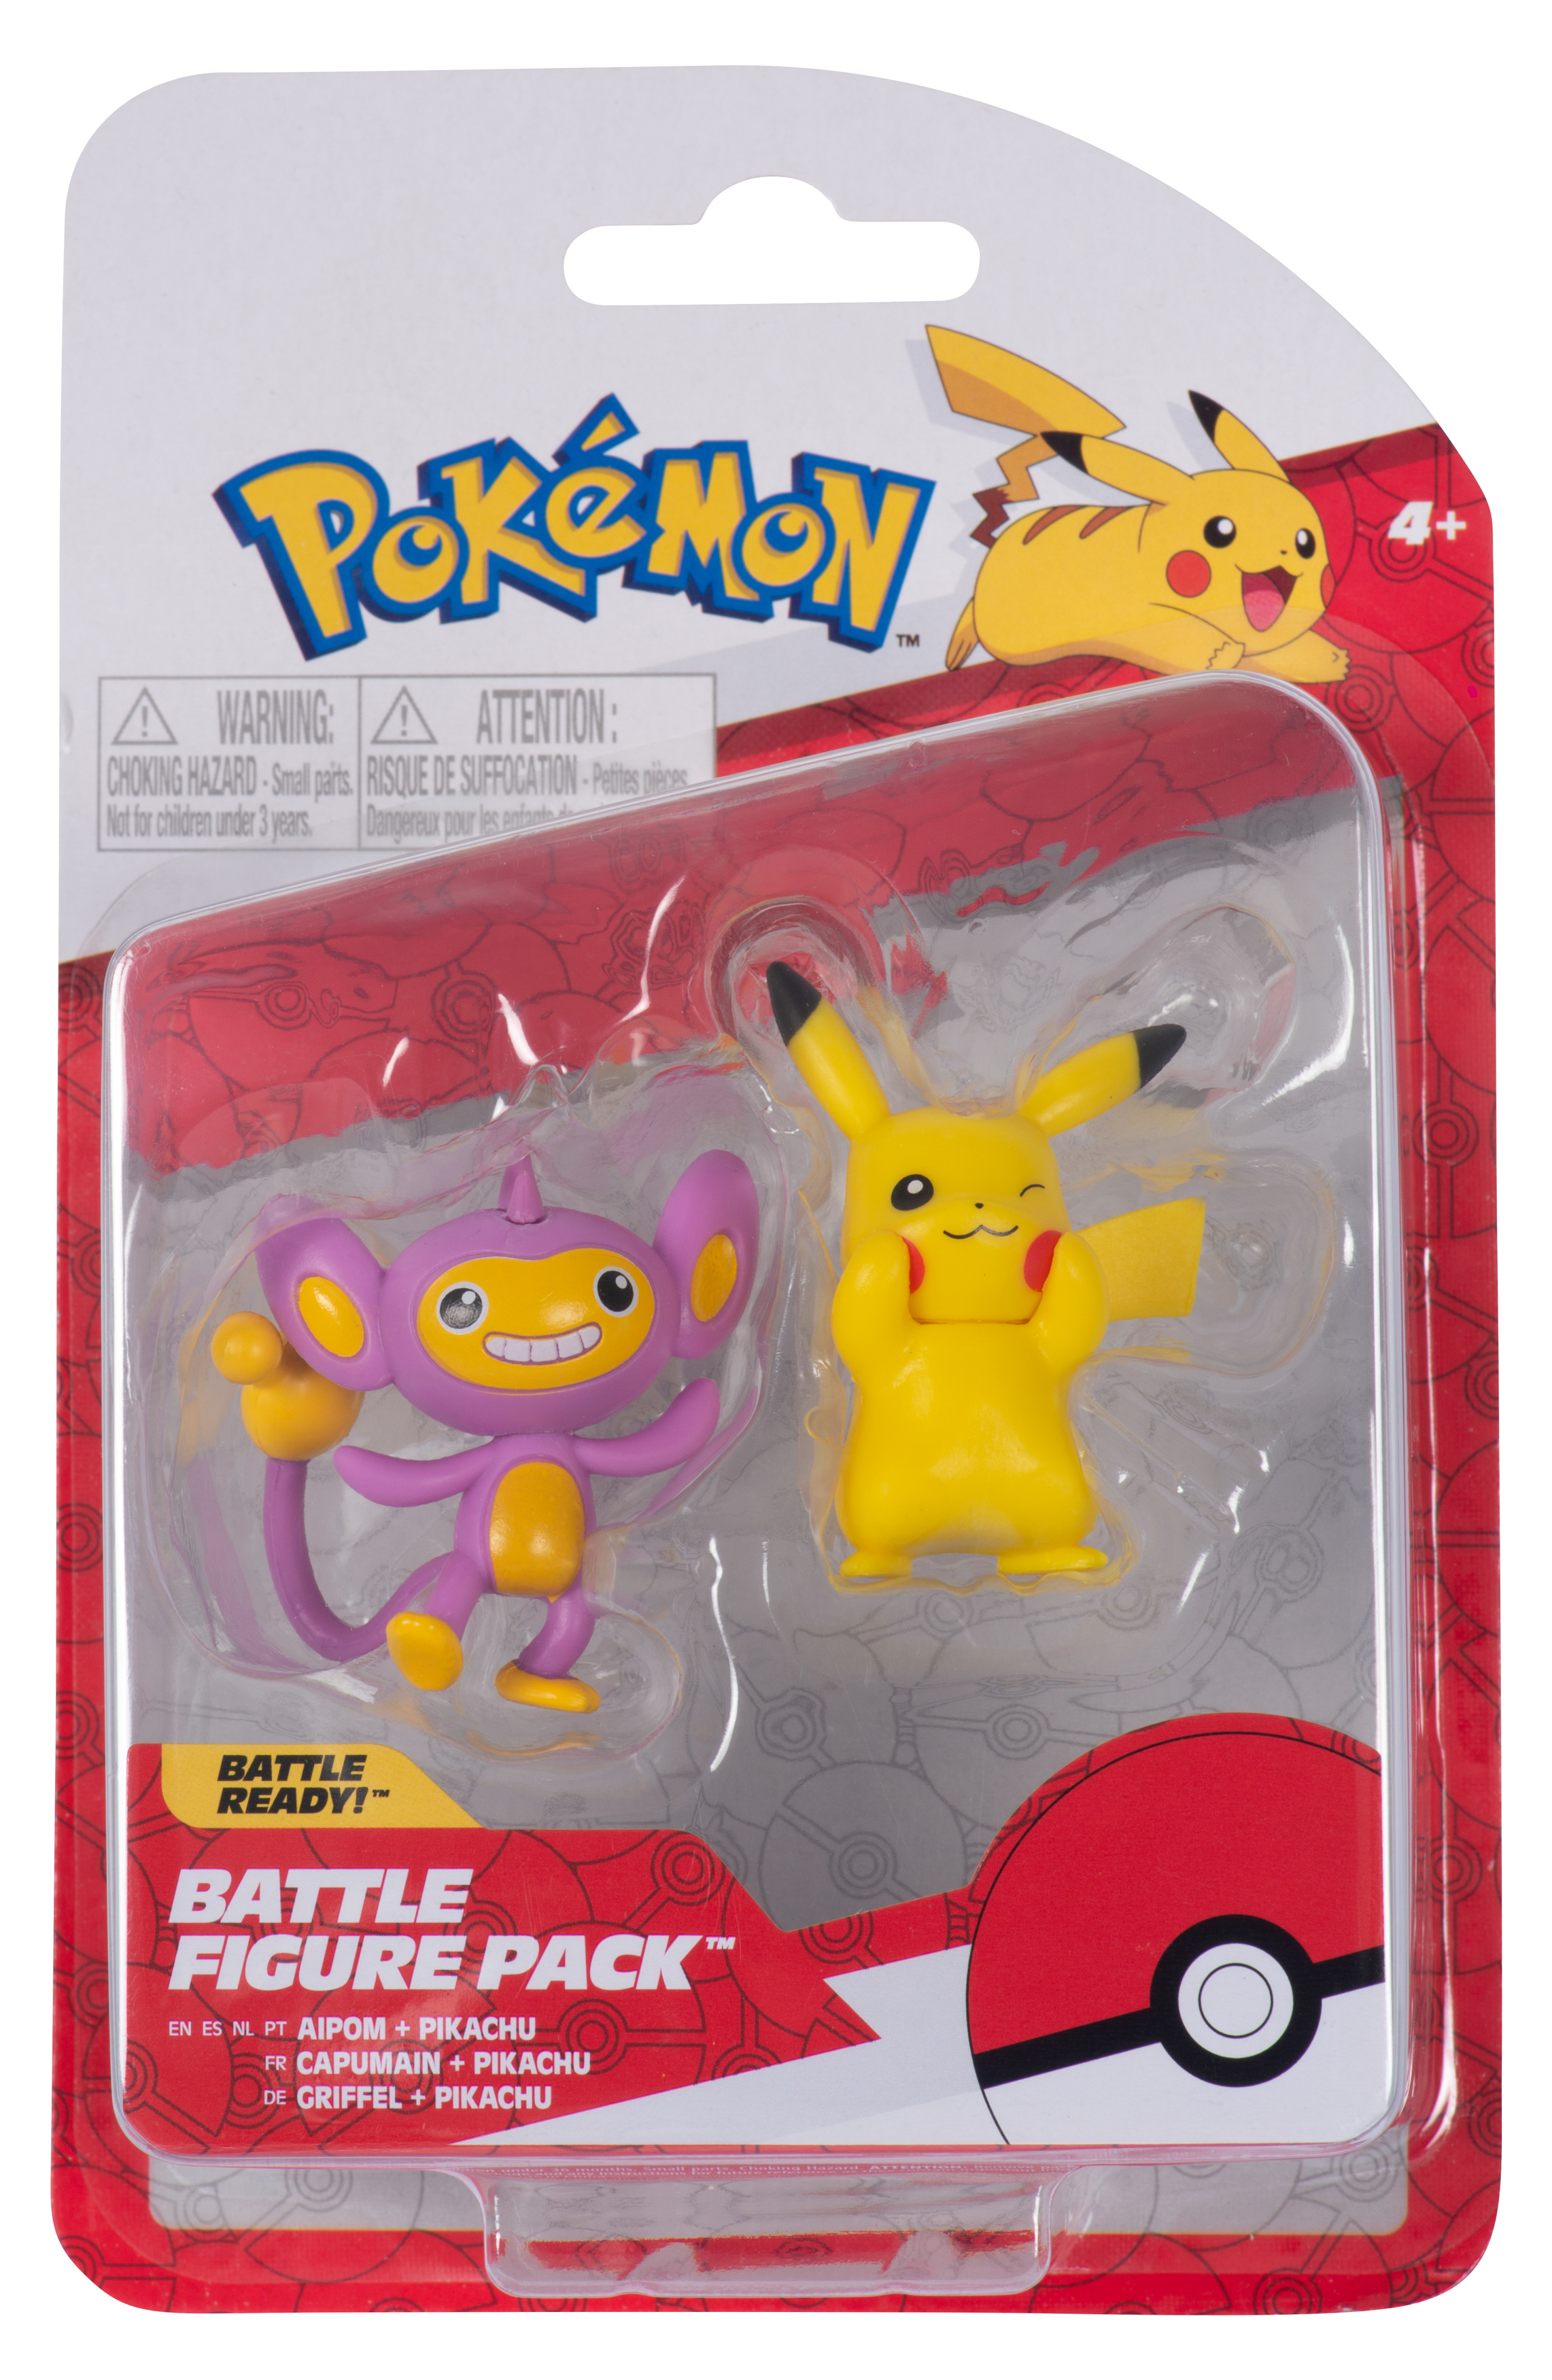 Pokémon - Battle Figure Pack - Pikachu & Griffel